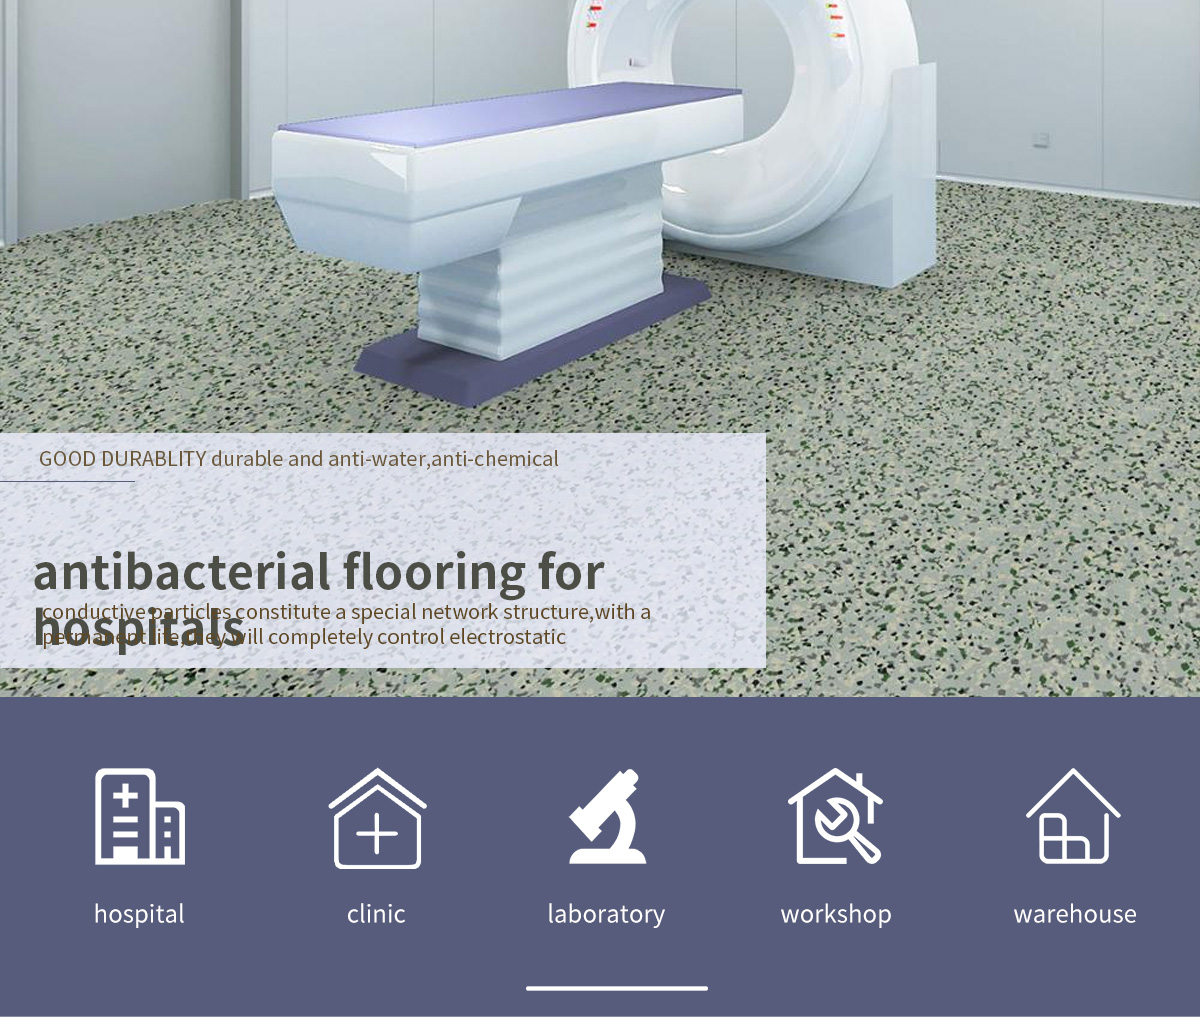 8-antibacterial-flooring-for-hospitals_01.jpg